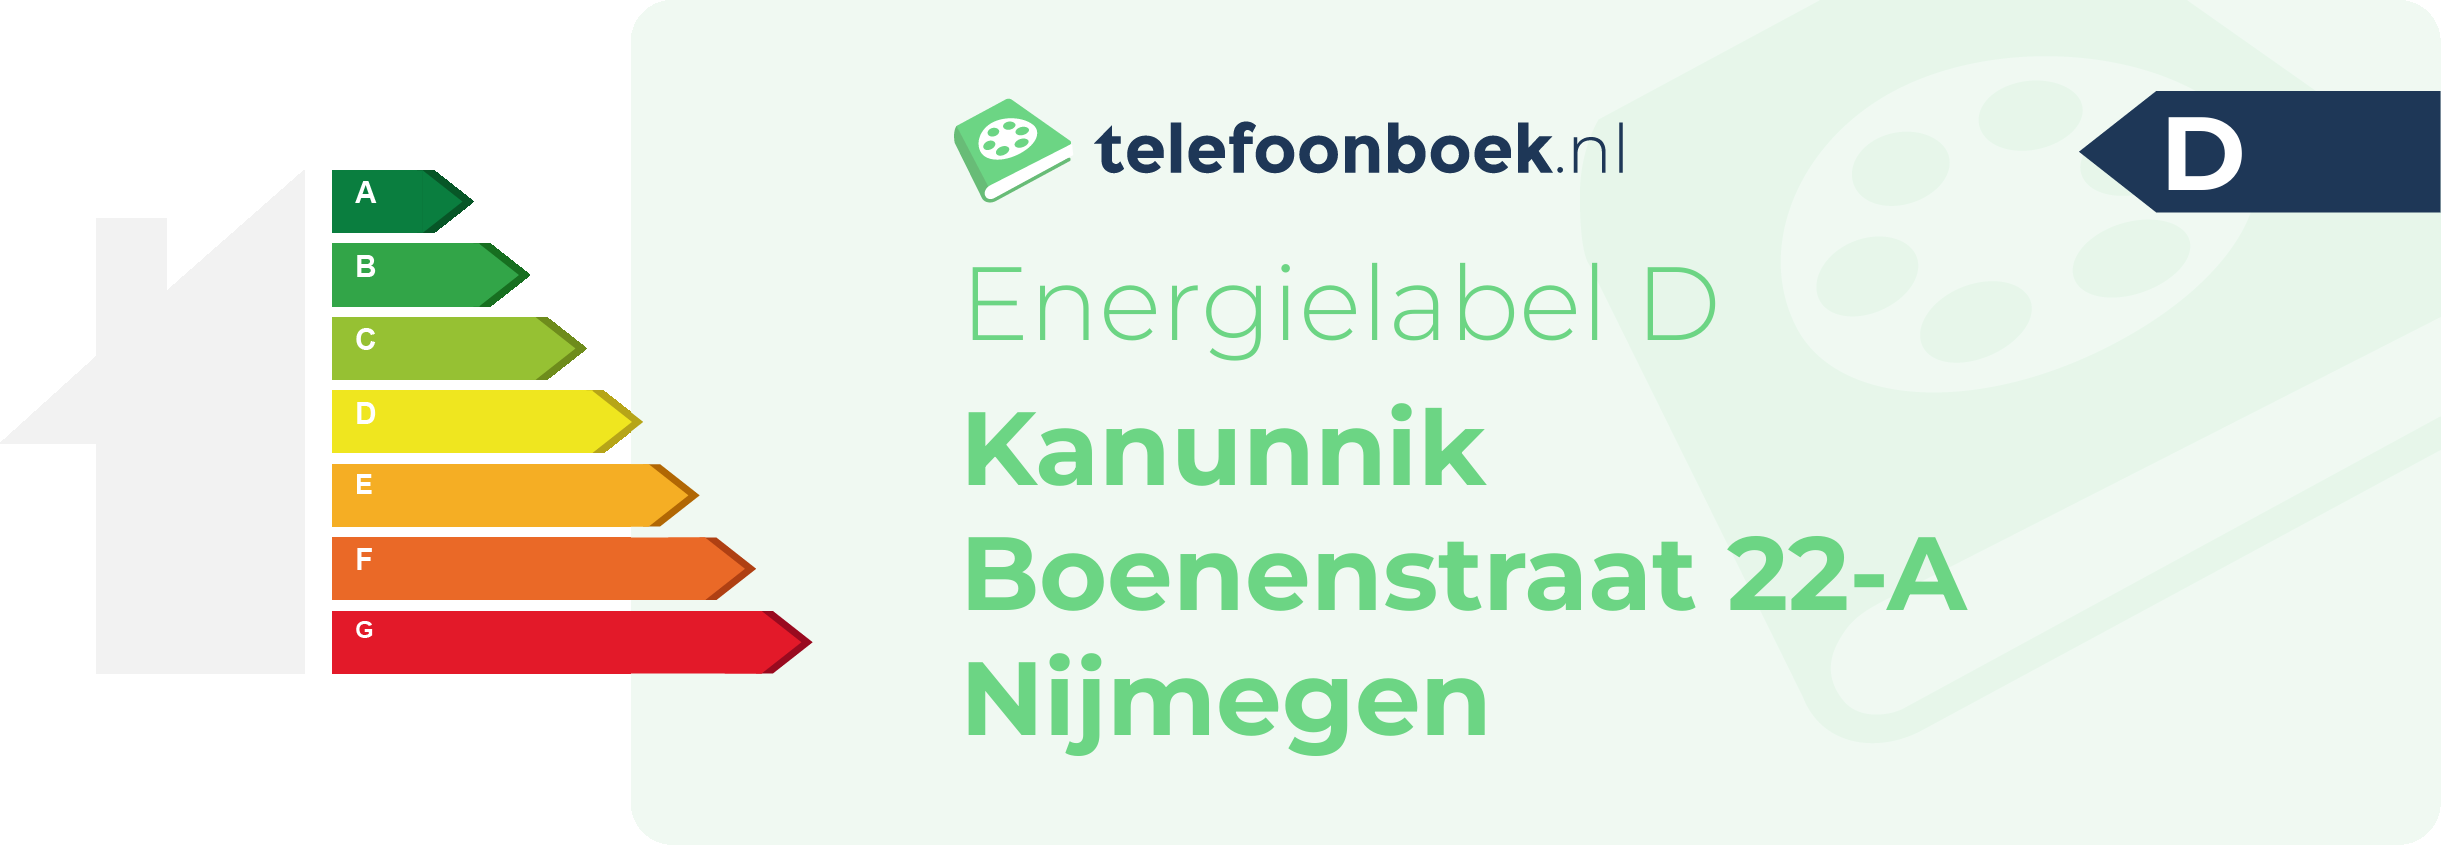 Energielabel Kanunnik Boenenstraat 22-A Nijmegen